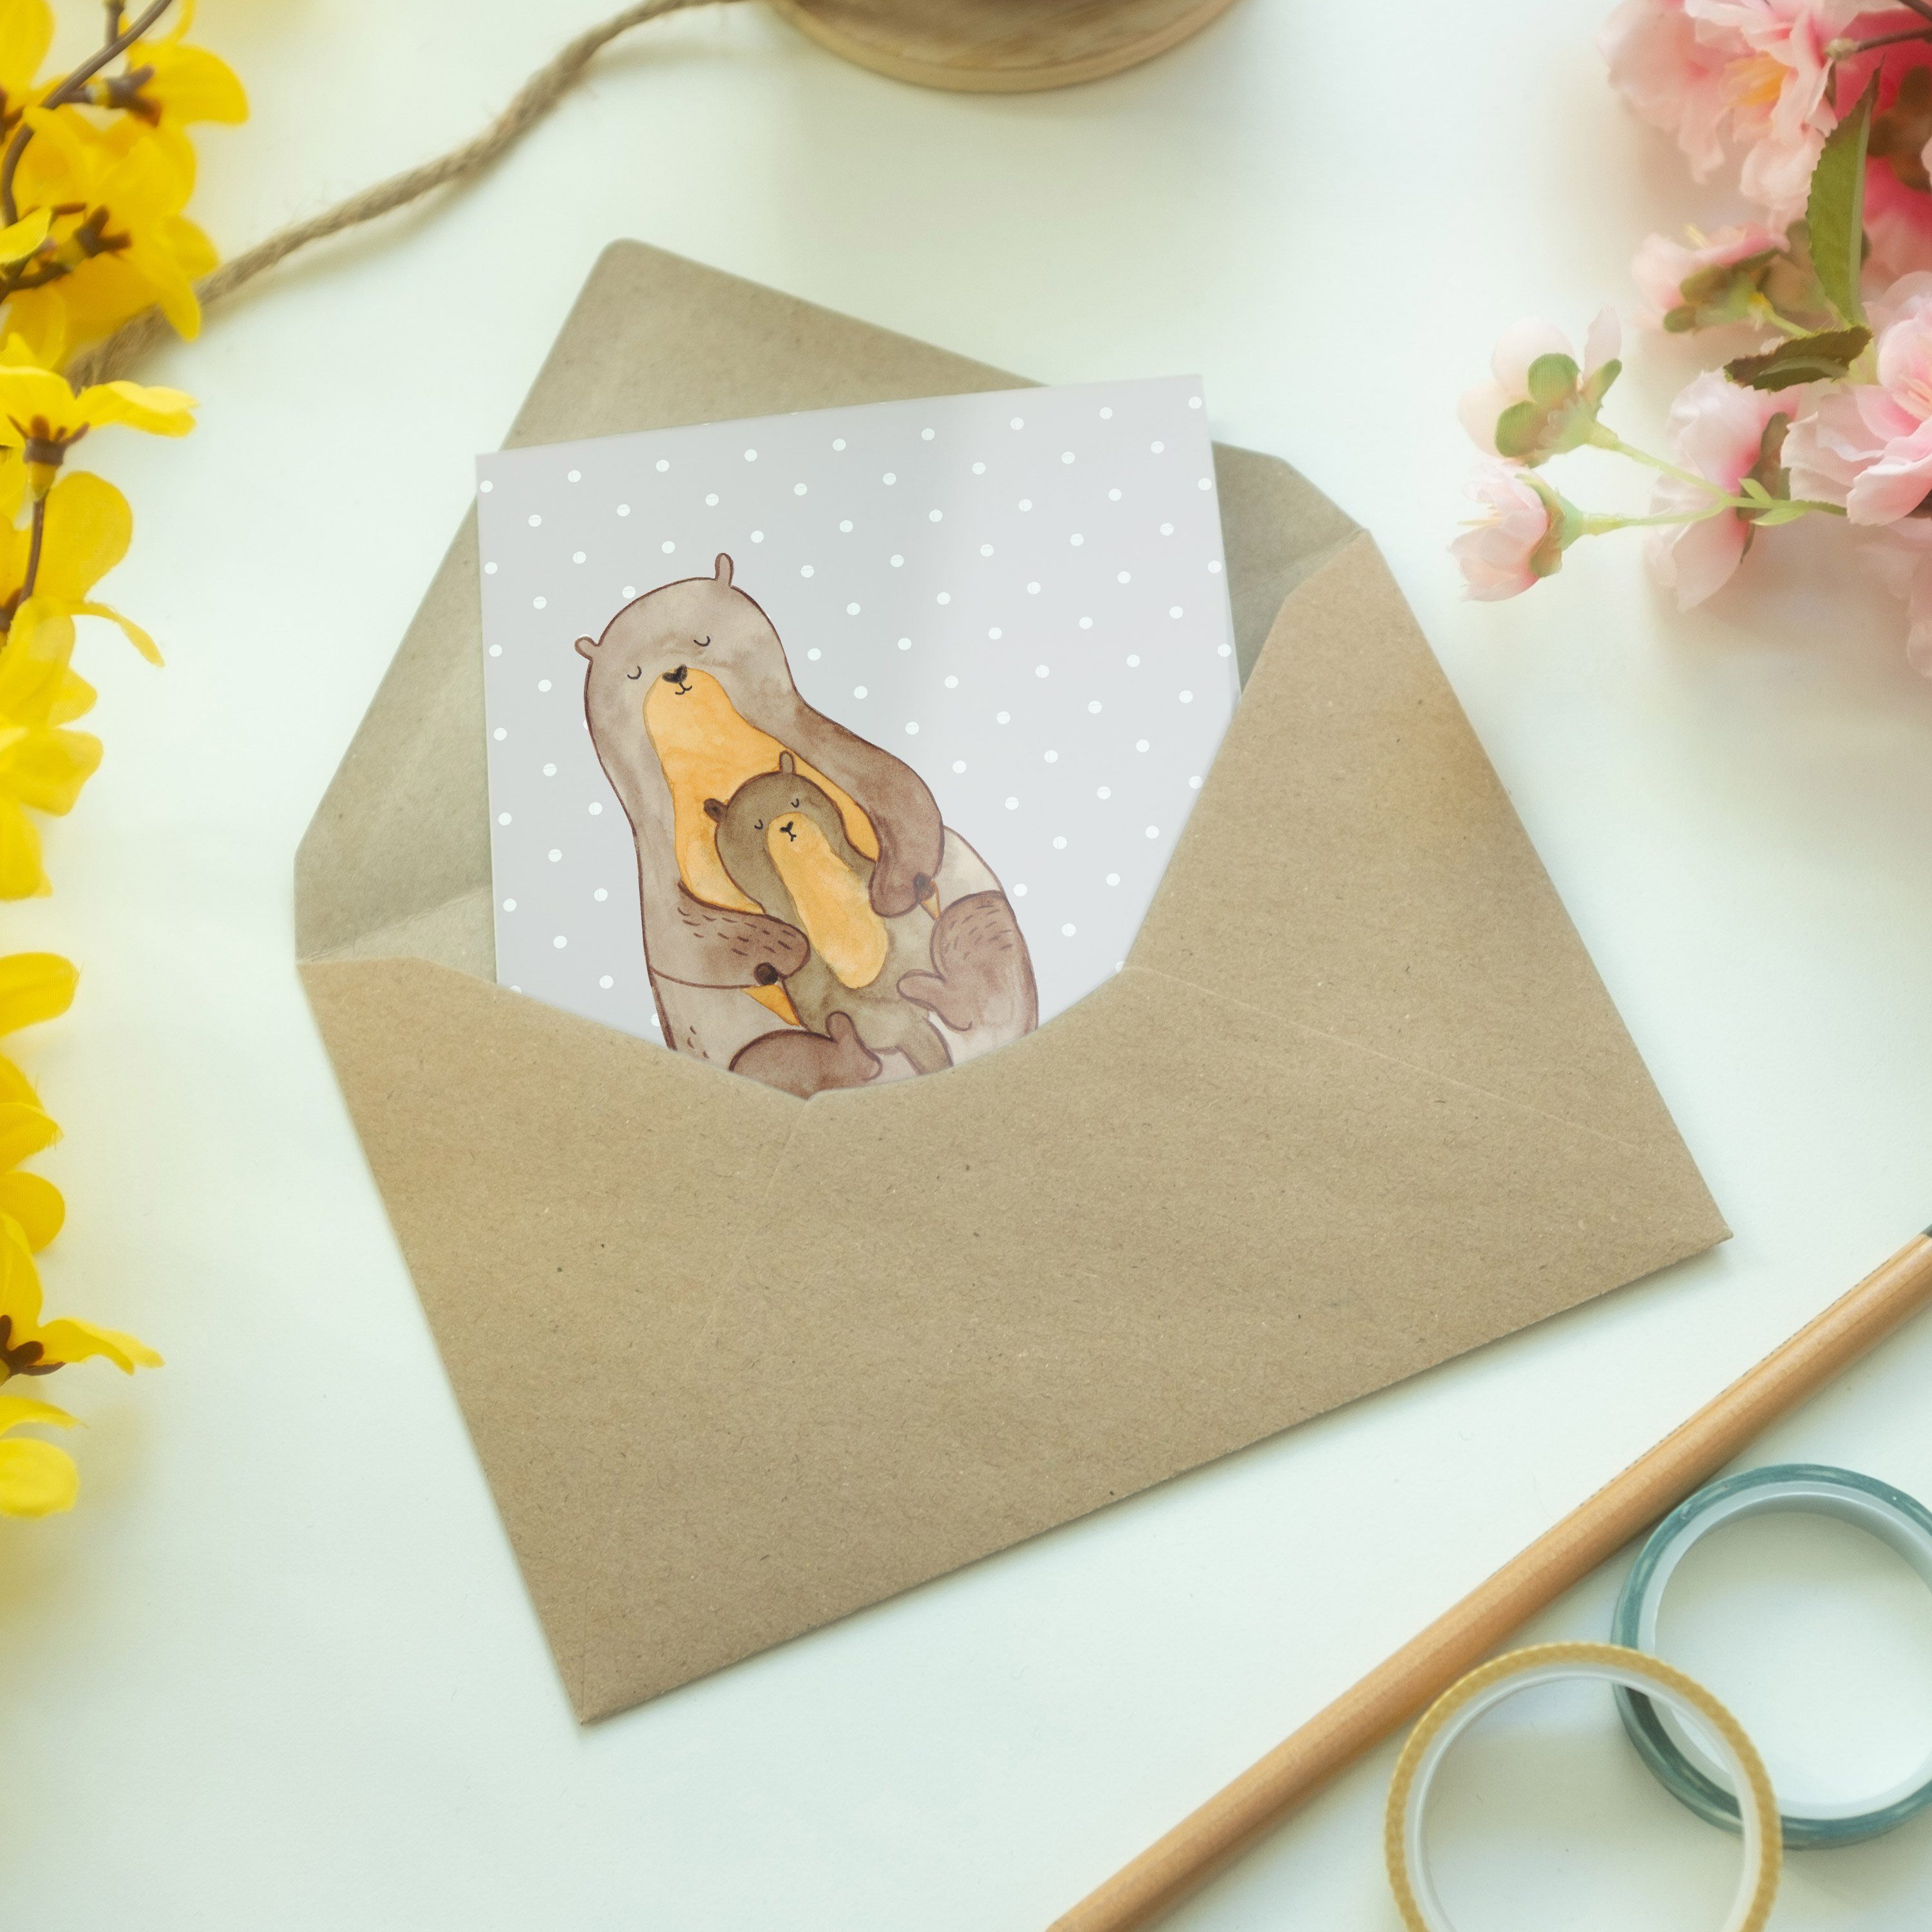 Mr. & Mrs. Panda Grußkarte Kind Otter Grau mit Pastell - Geschenk, O - Einladungskarte, Familie